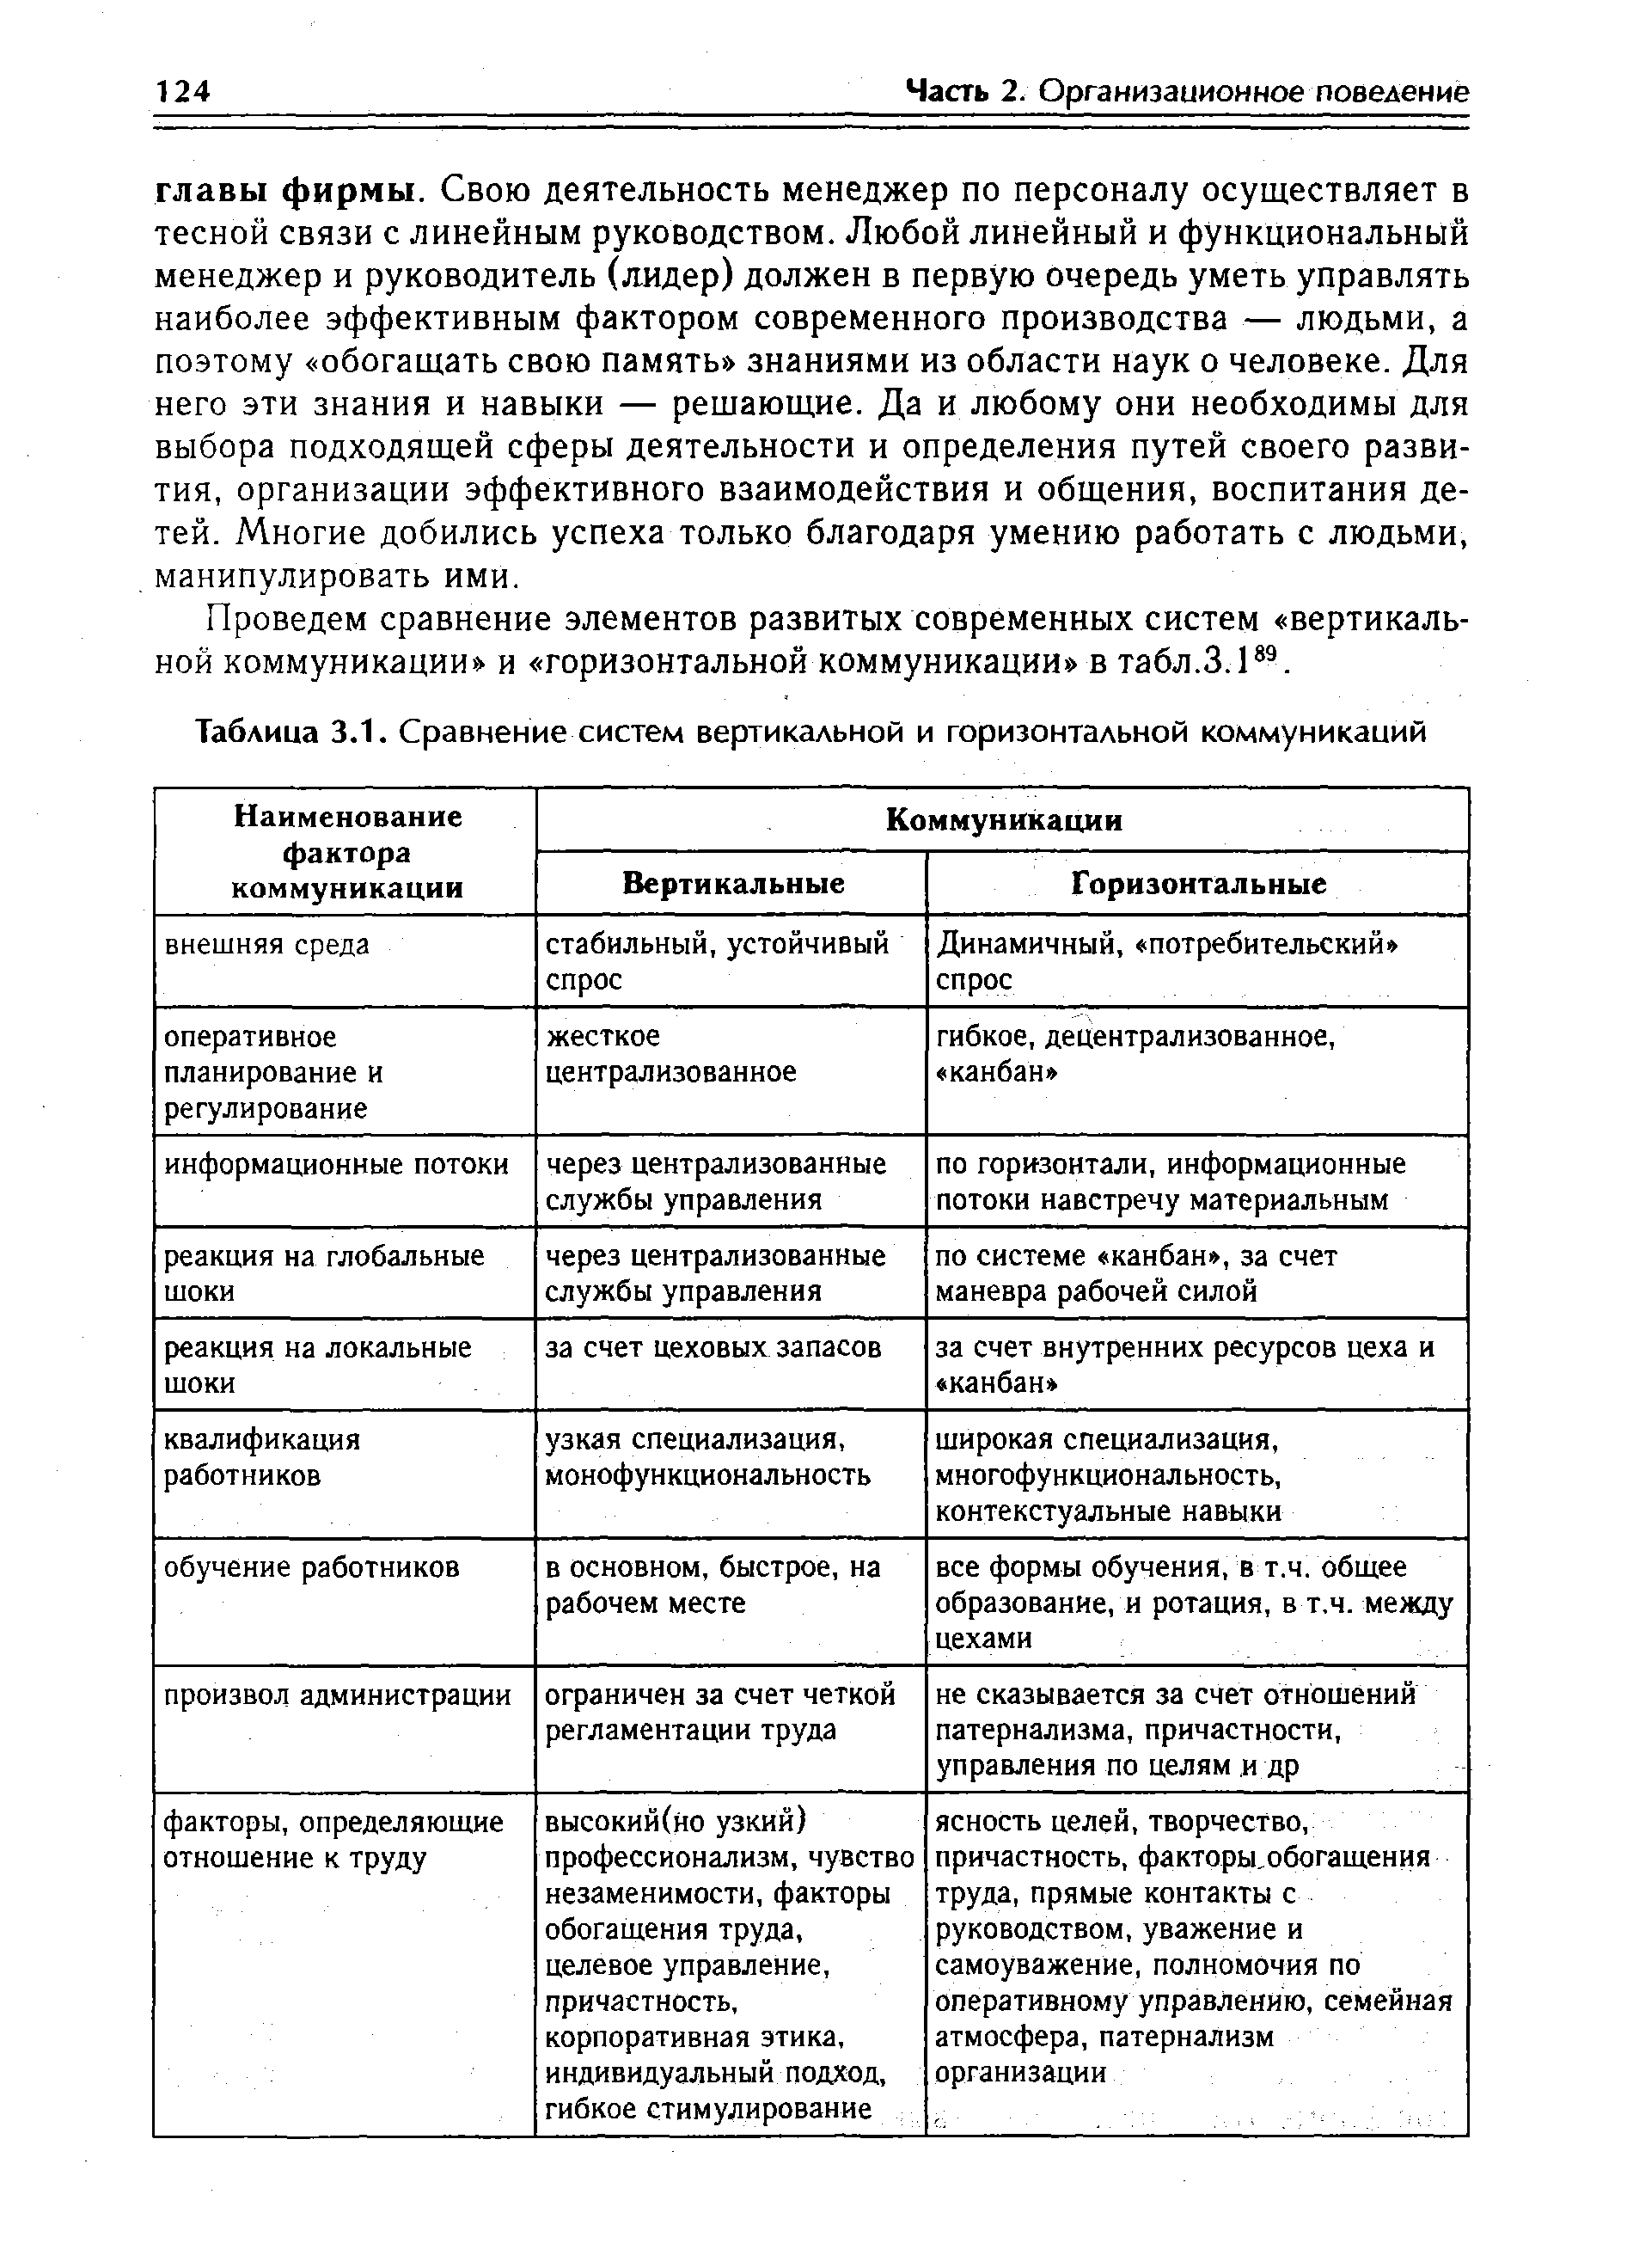 Таблица 3.1. Сравнение систем вертикальной и горизонтальной коммуникаций
